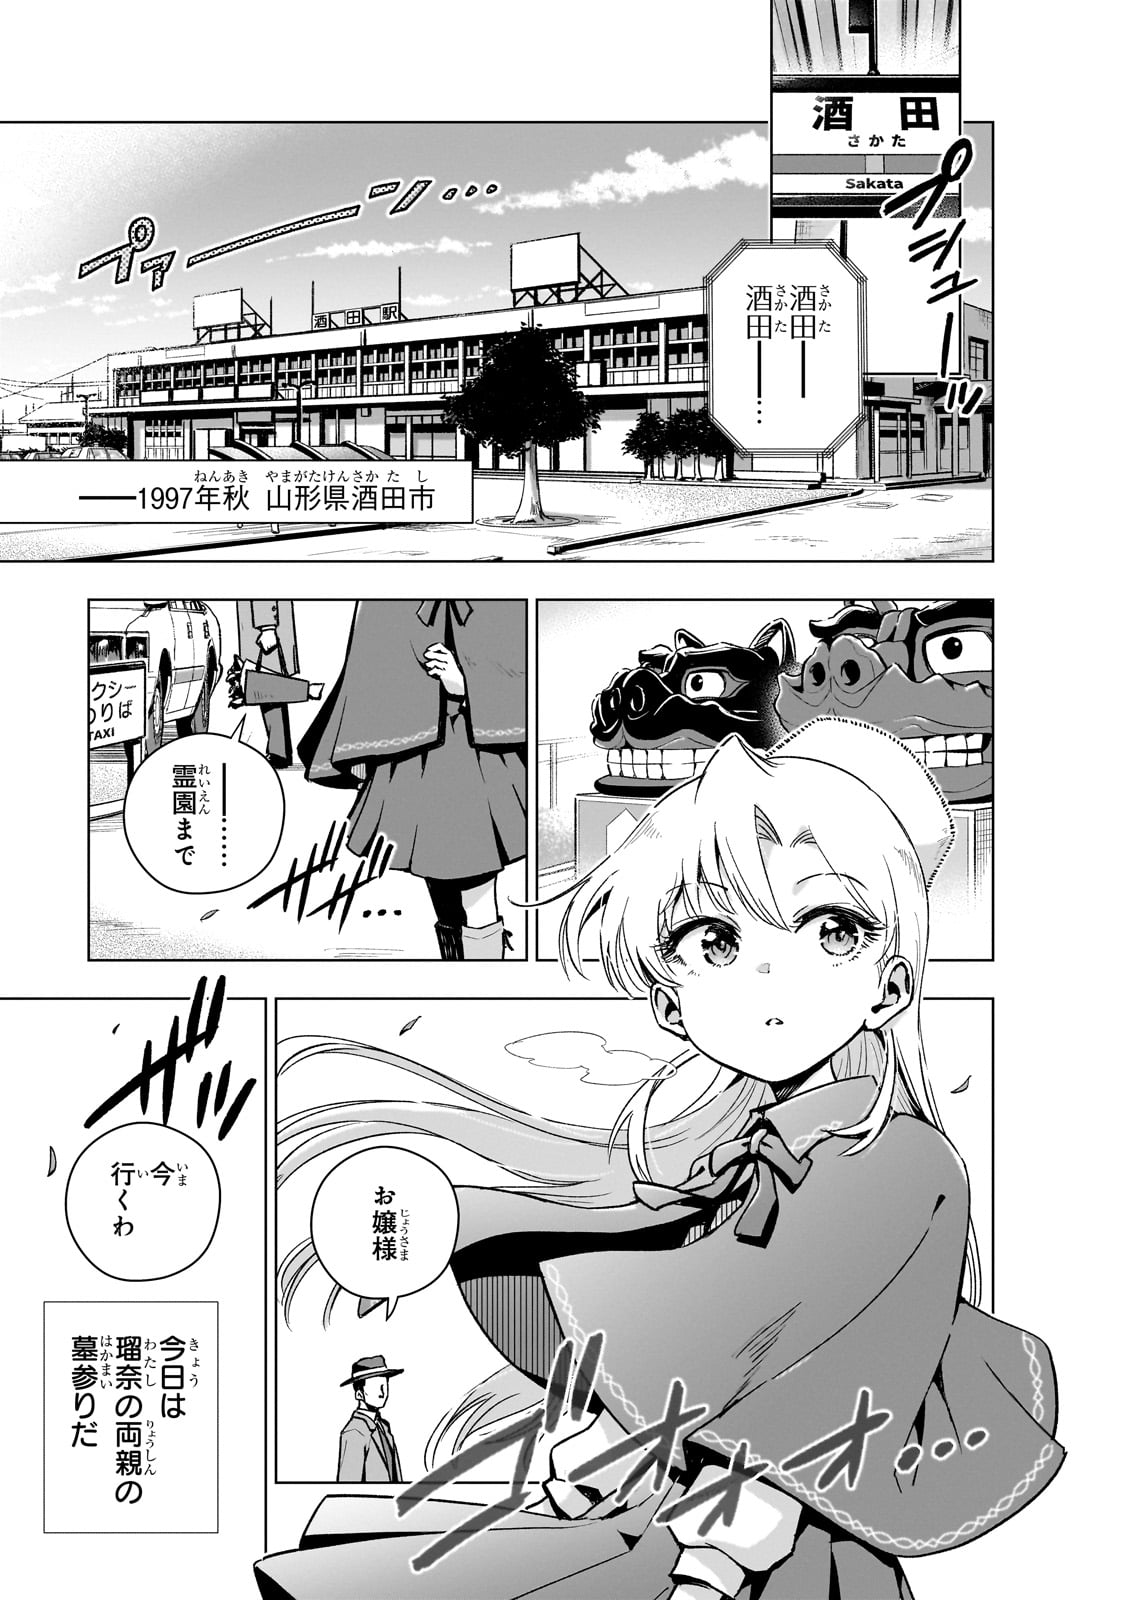 Gendai Shakai de Otome Game no Akuyaku Reijou wo suru no wa Chotto Taihen - Chapter 11 - Page 1